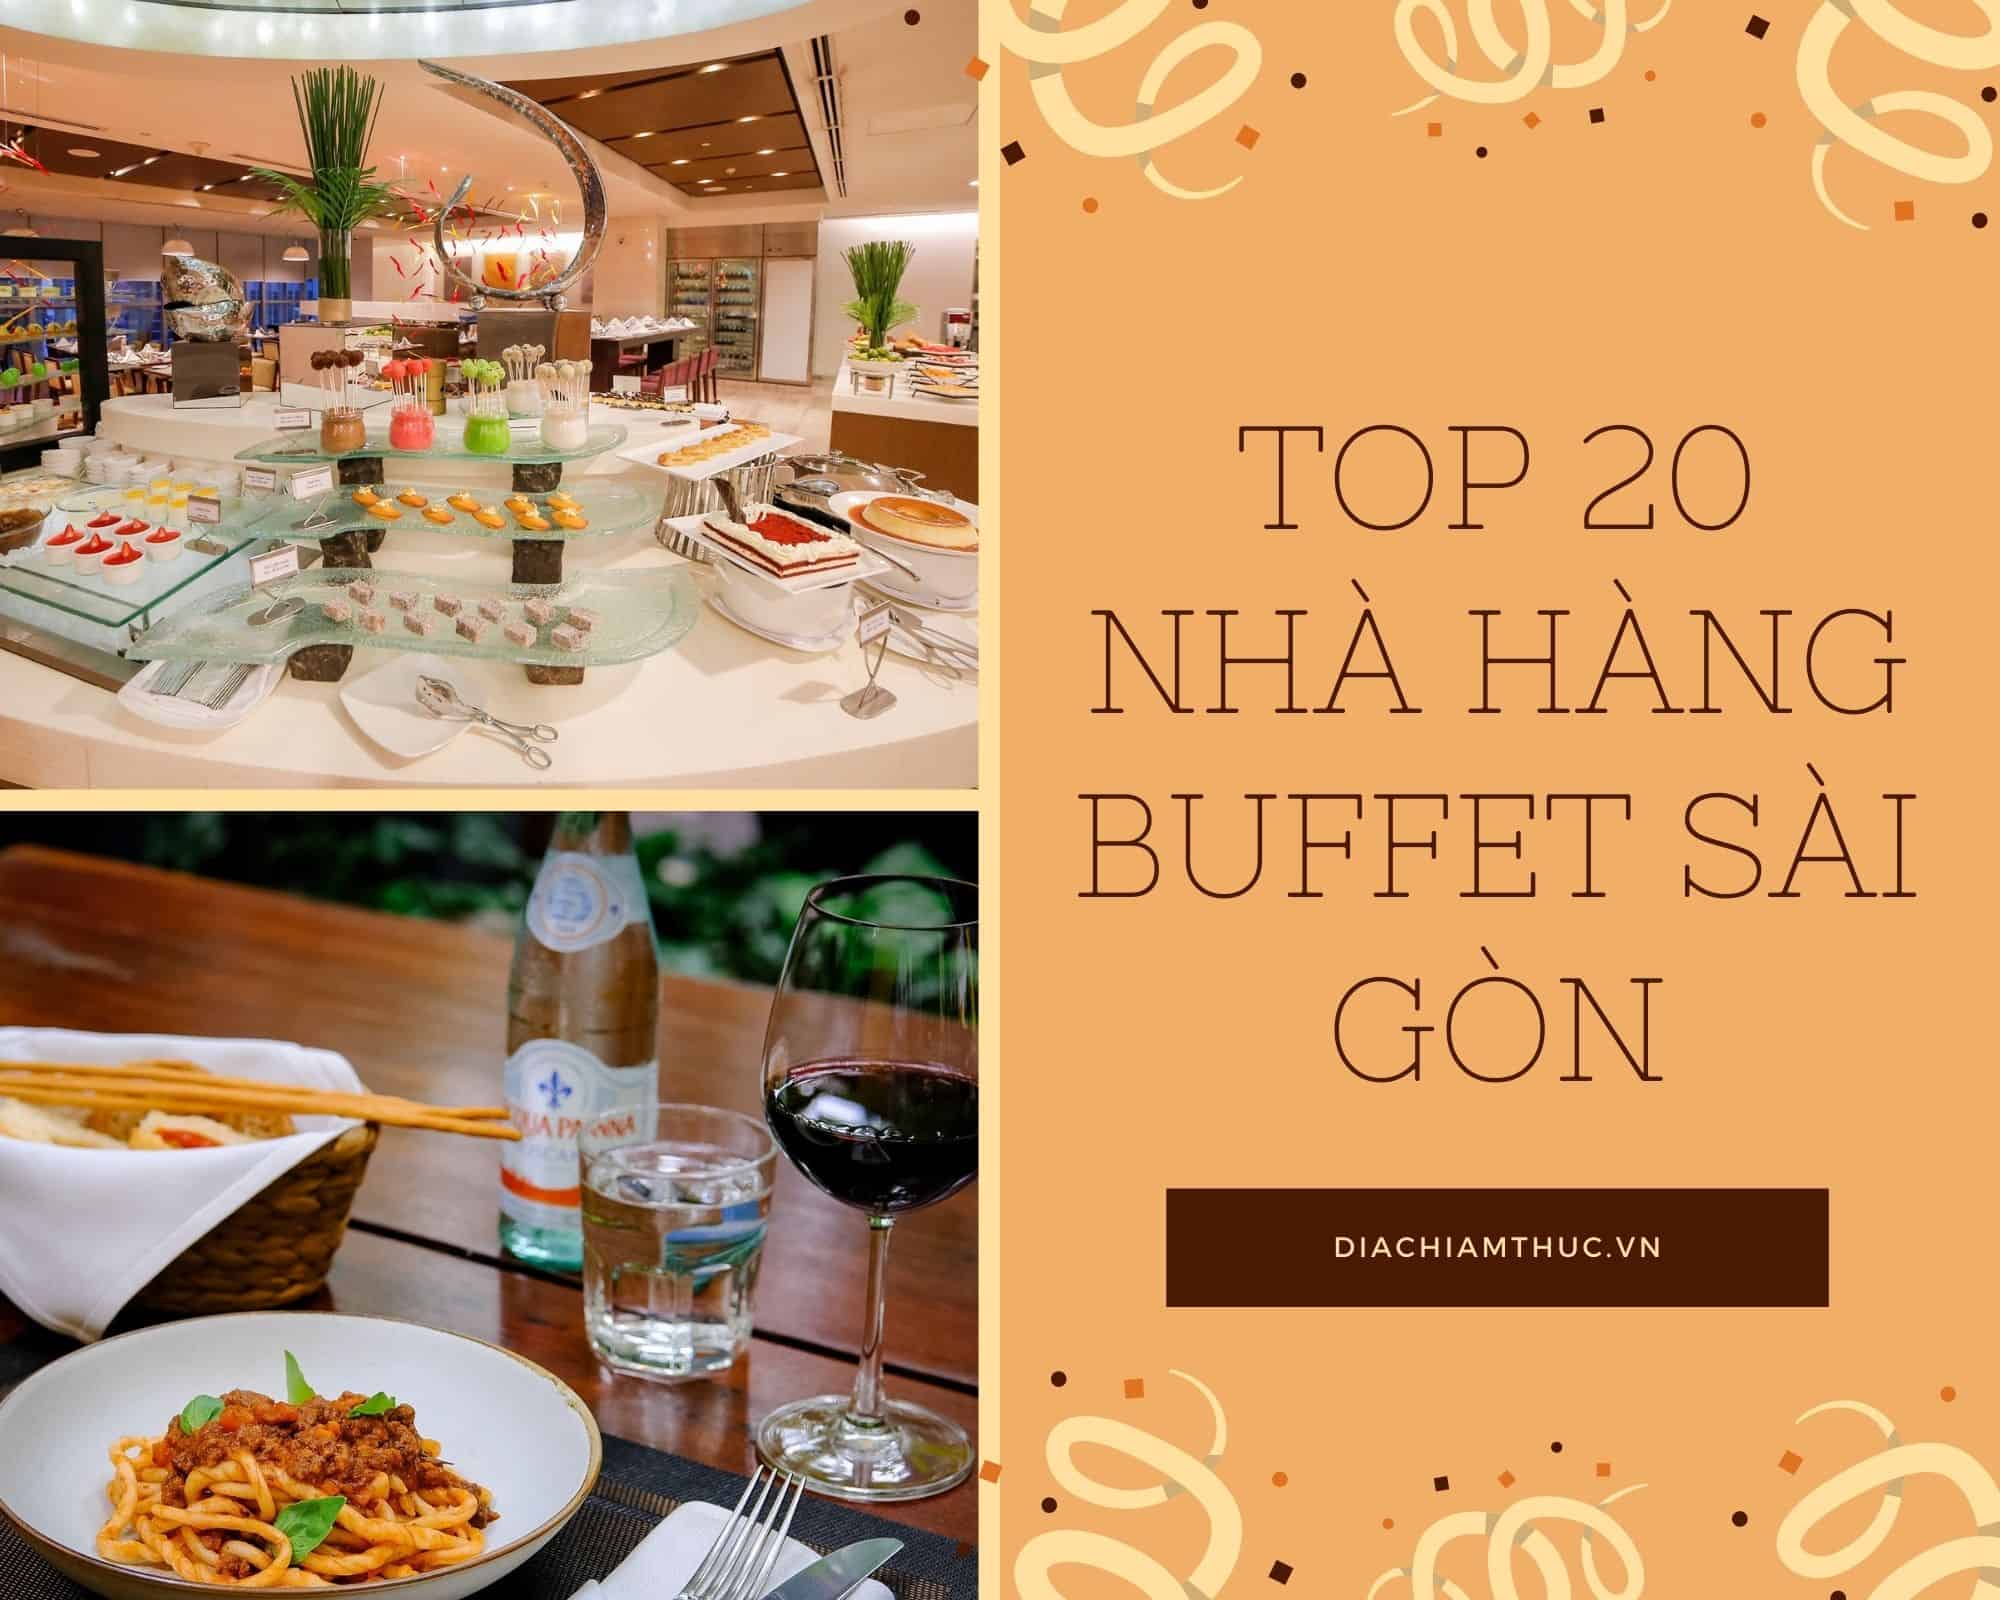 Nhà hàng Hoàng Yến Buffet Premier có ưu điểm gì đặc biệt để thu hút khách hàng đi thưởng thức buffet hải sản?
